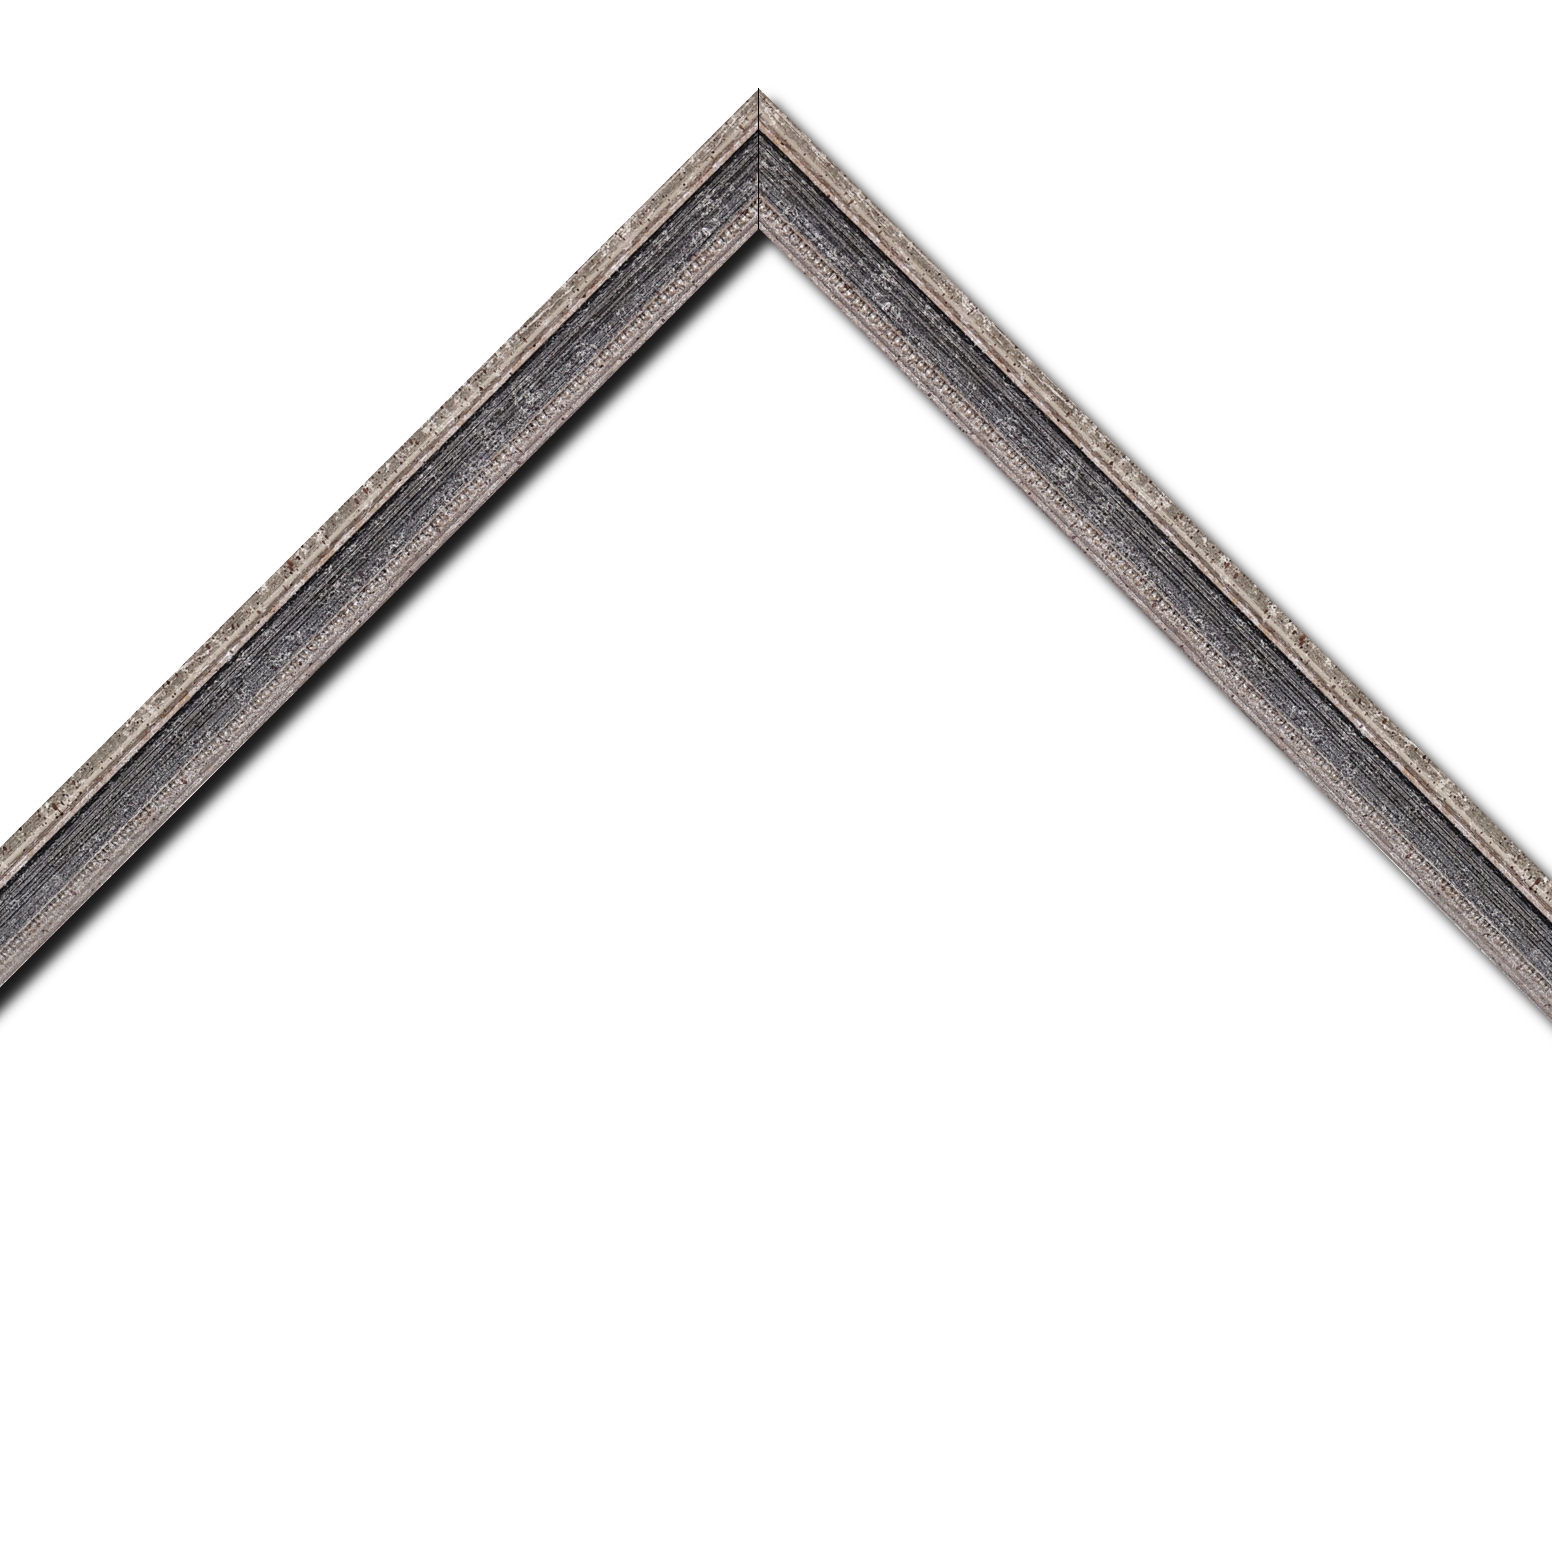 Baguette bois profil incurvé largeur 2.4cm argent antique gorge gris noirci vieilli filet perle argent